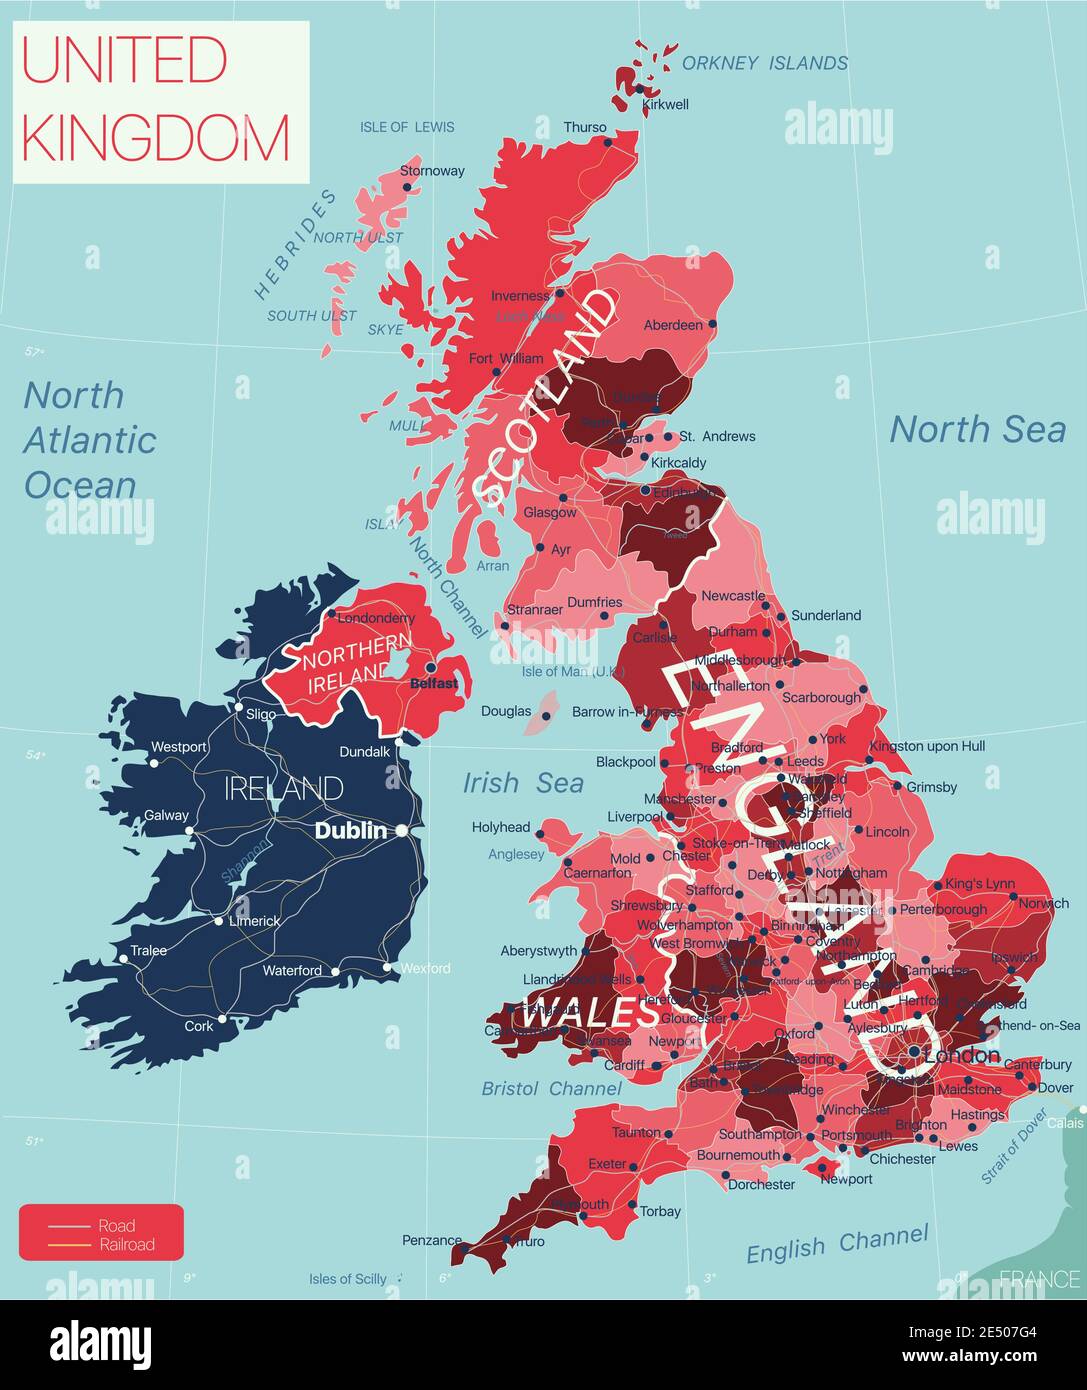 Großbritannien Land detaillierte editierbare Karte mit Regionen Städte und Städte, Straßen und Eisenbahnen, geografische Standorte. Vector EPS-10-Datei Stock Vektor